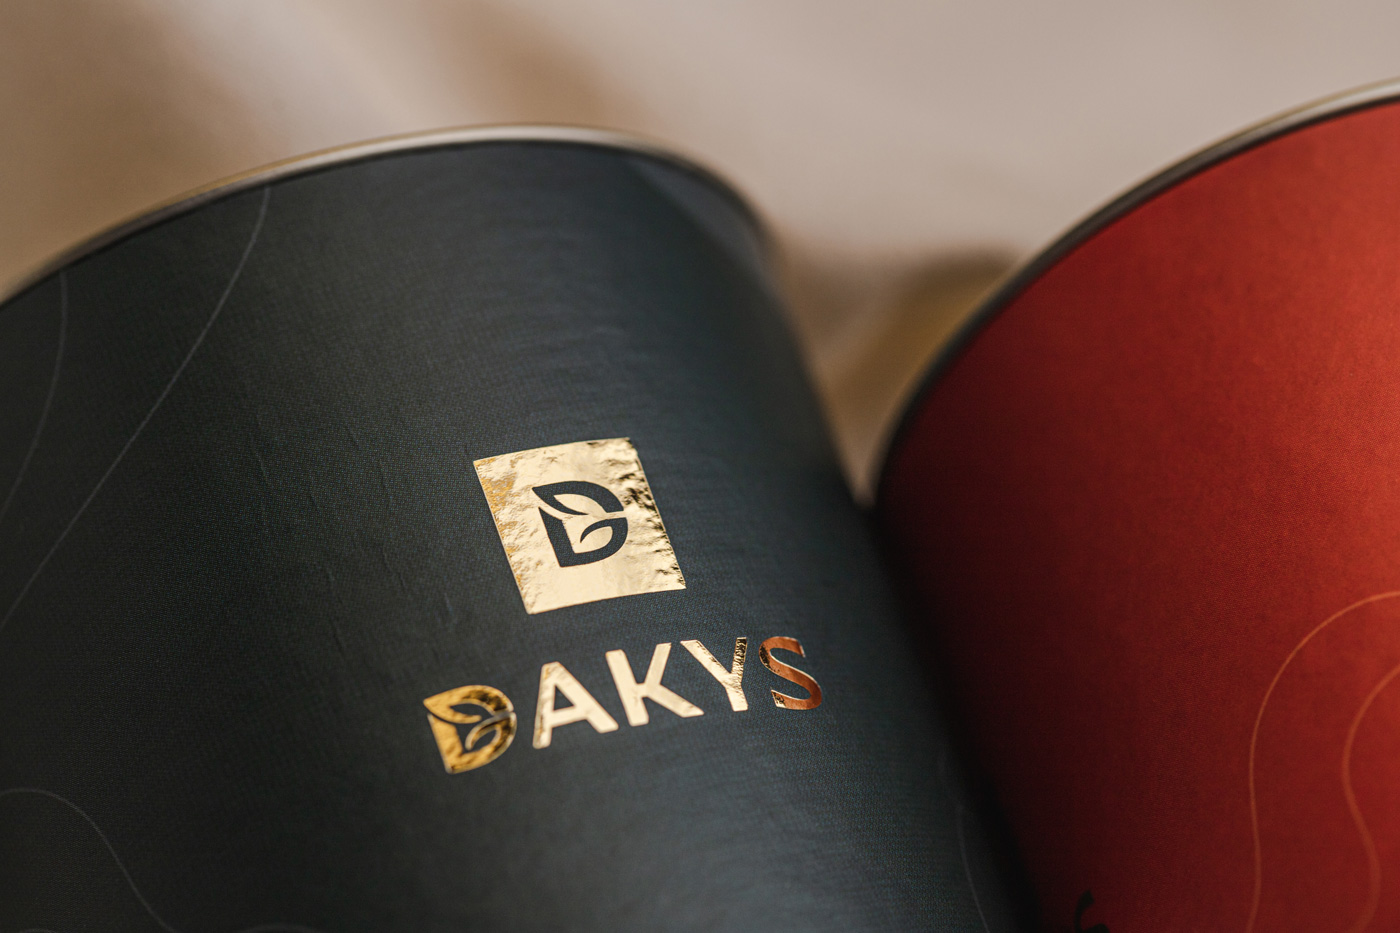 dakys_logo